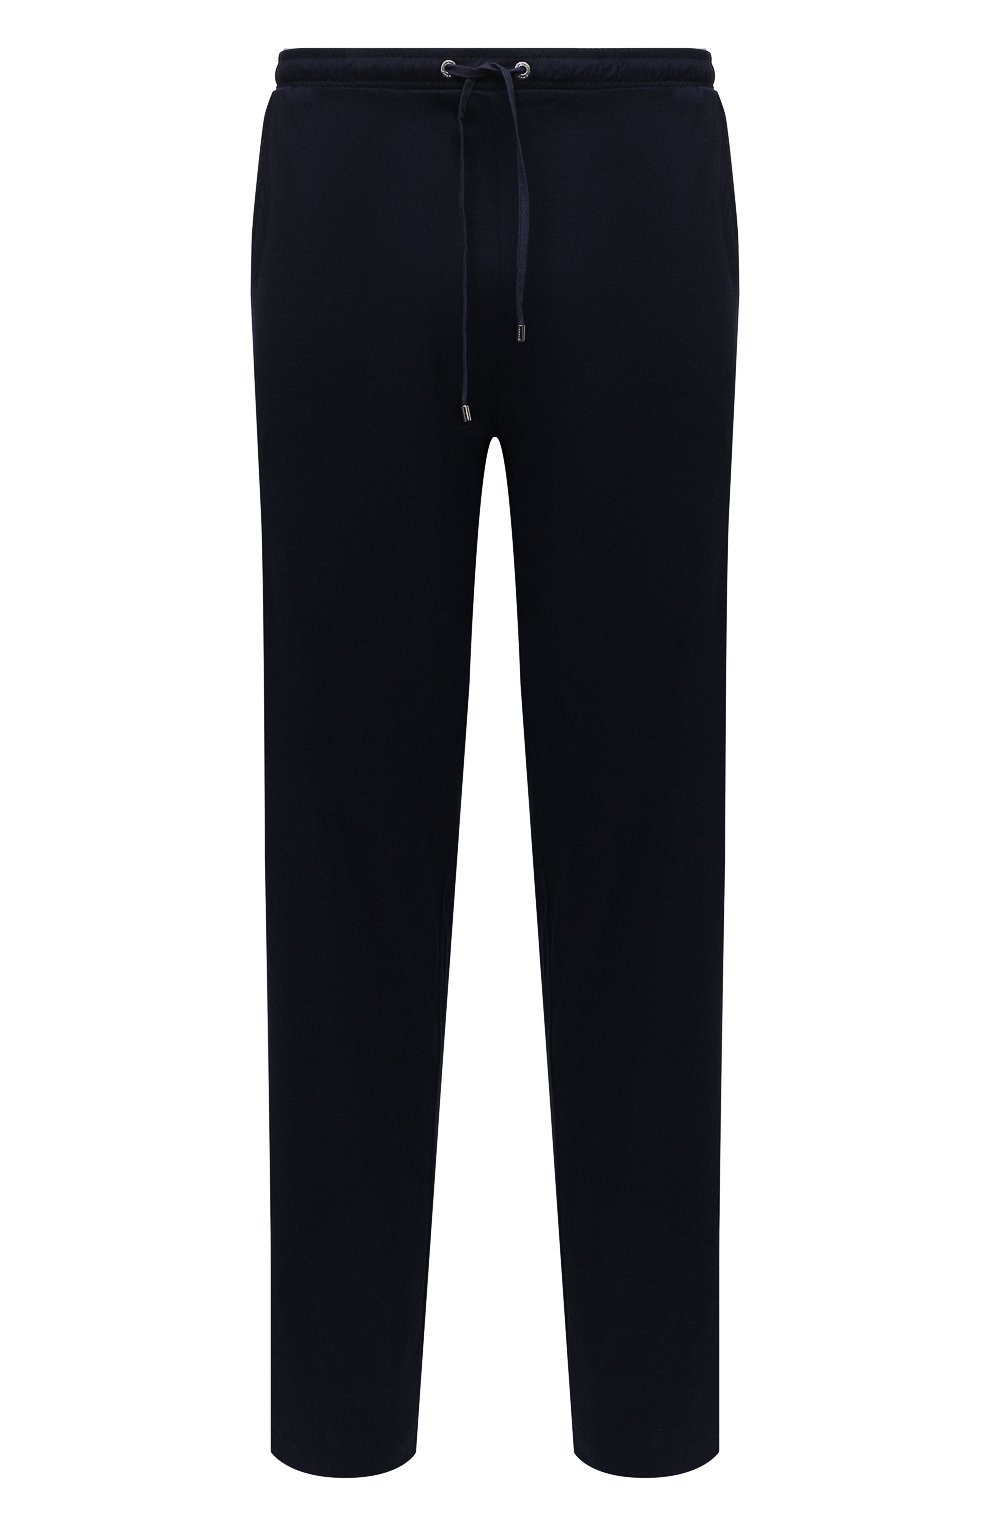 Мужские темно-синие домашние брюки ZIMMERLI купить в интернет-магазине ЦУМ,арт. 8520-21092